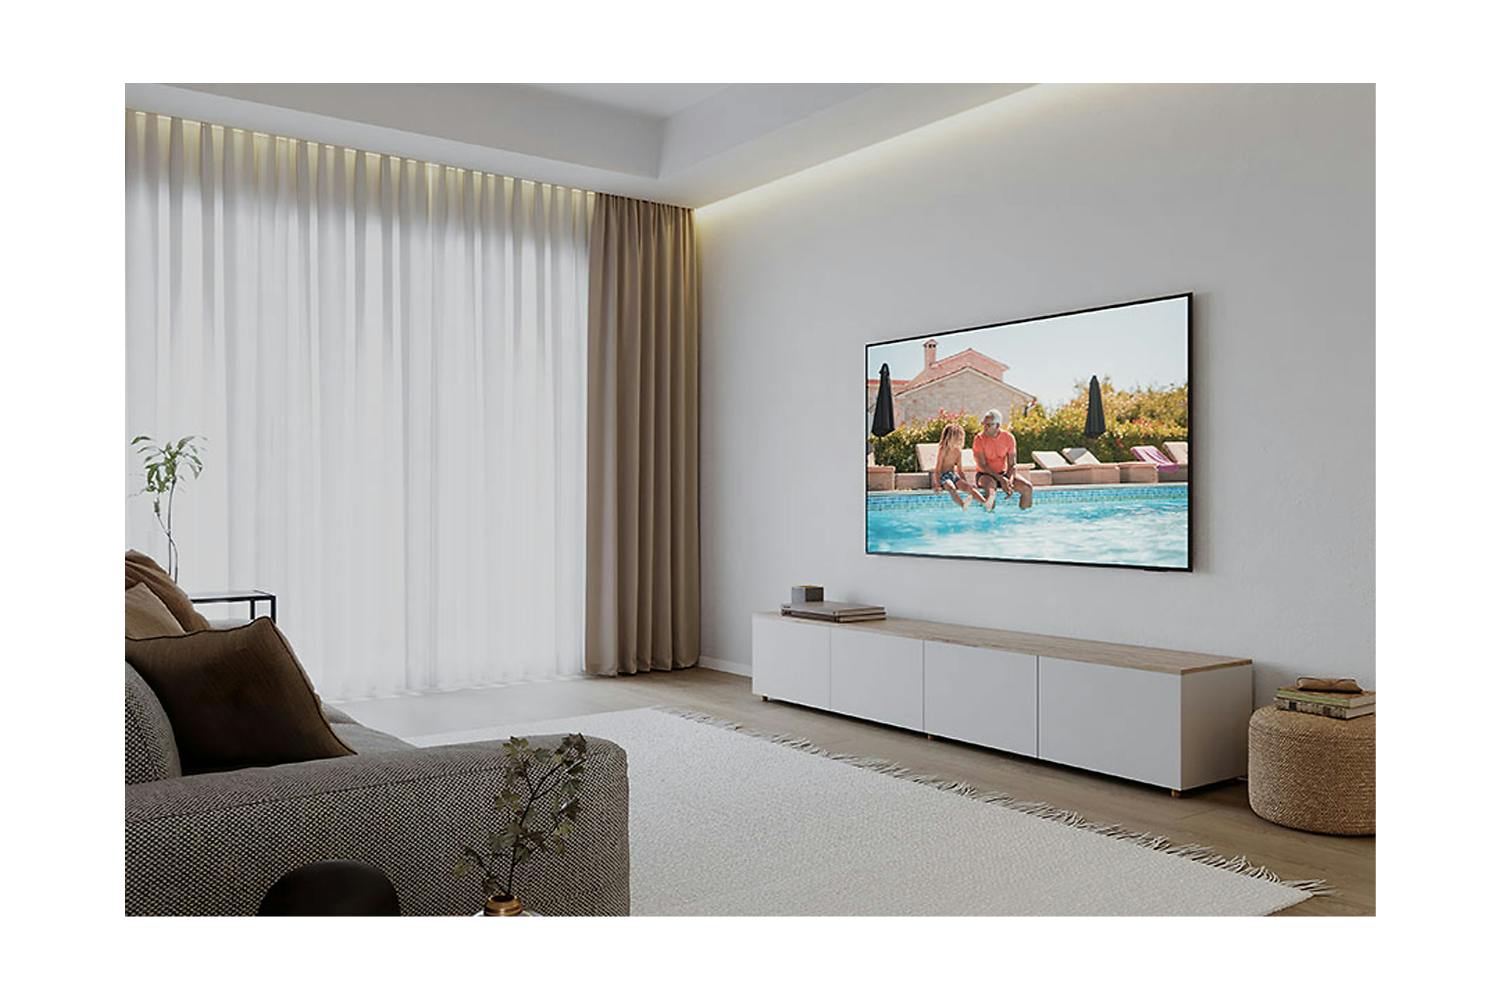 Samsung DU8070 55" Crystal UHD 4K HDR Smart TV (2024) | UE55DU8070UXXU